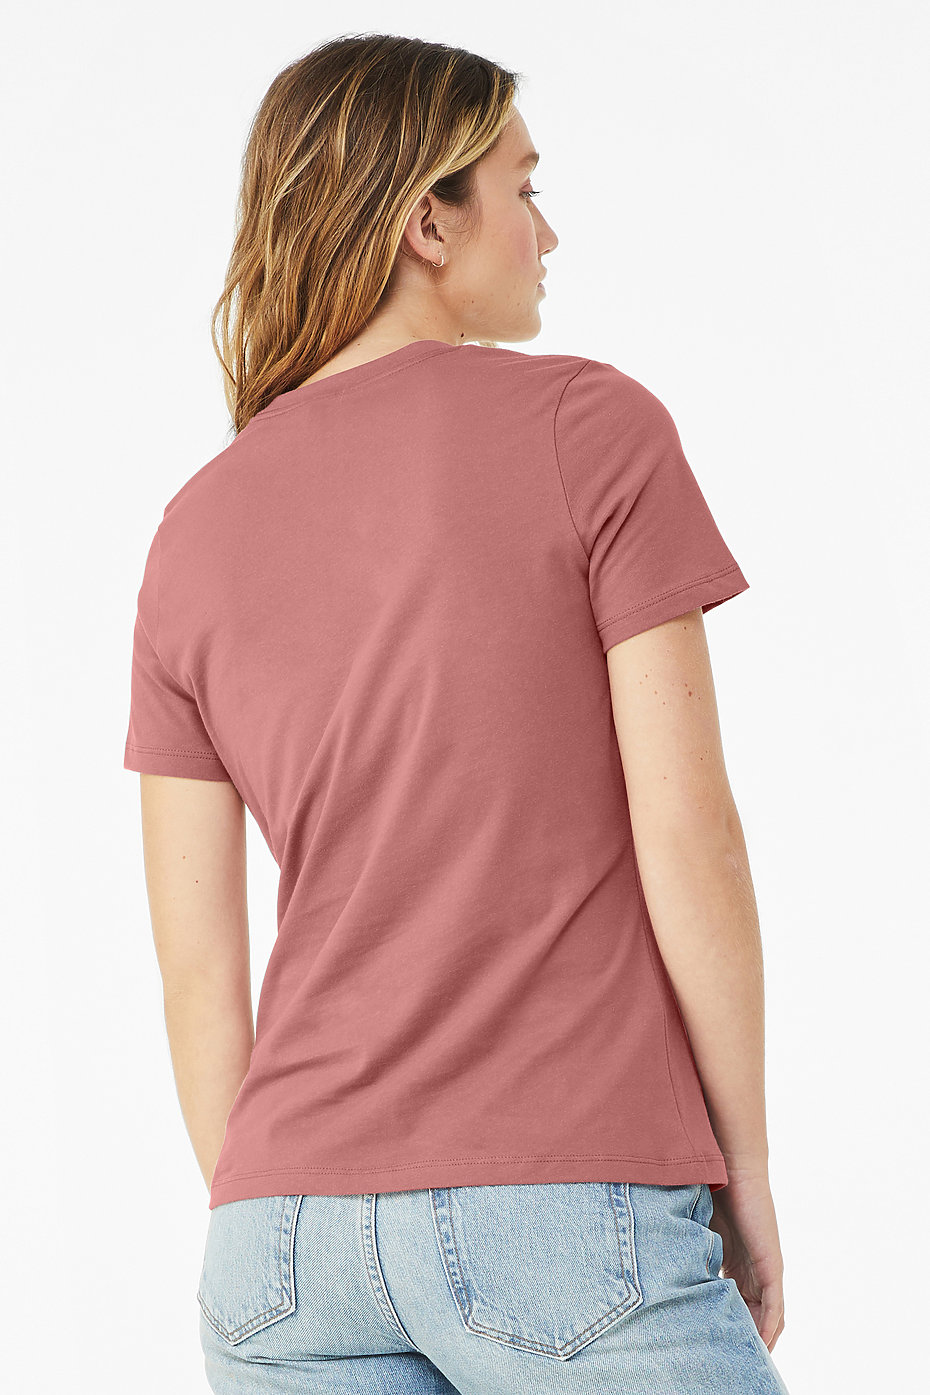 Plain Jersey T Shirts, Wholesale Jersey T Shirts, Womens Bulk T Shirts